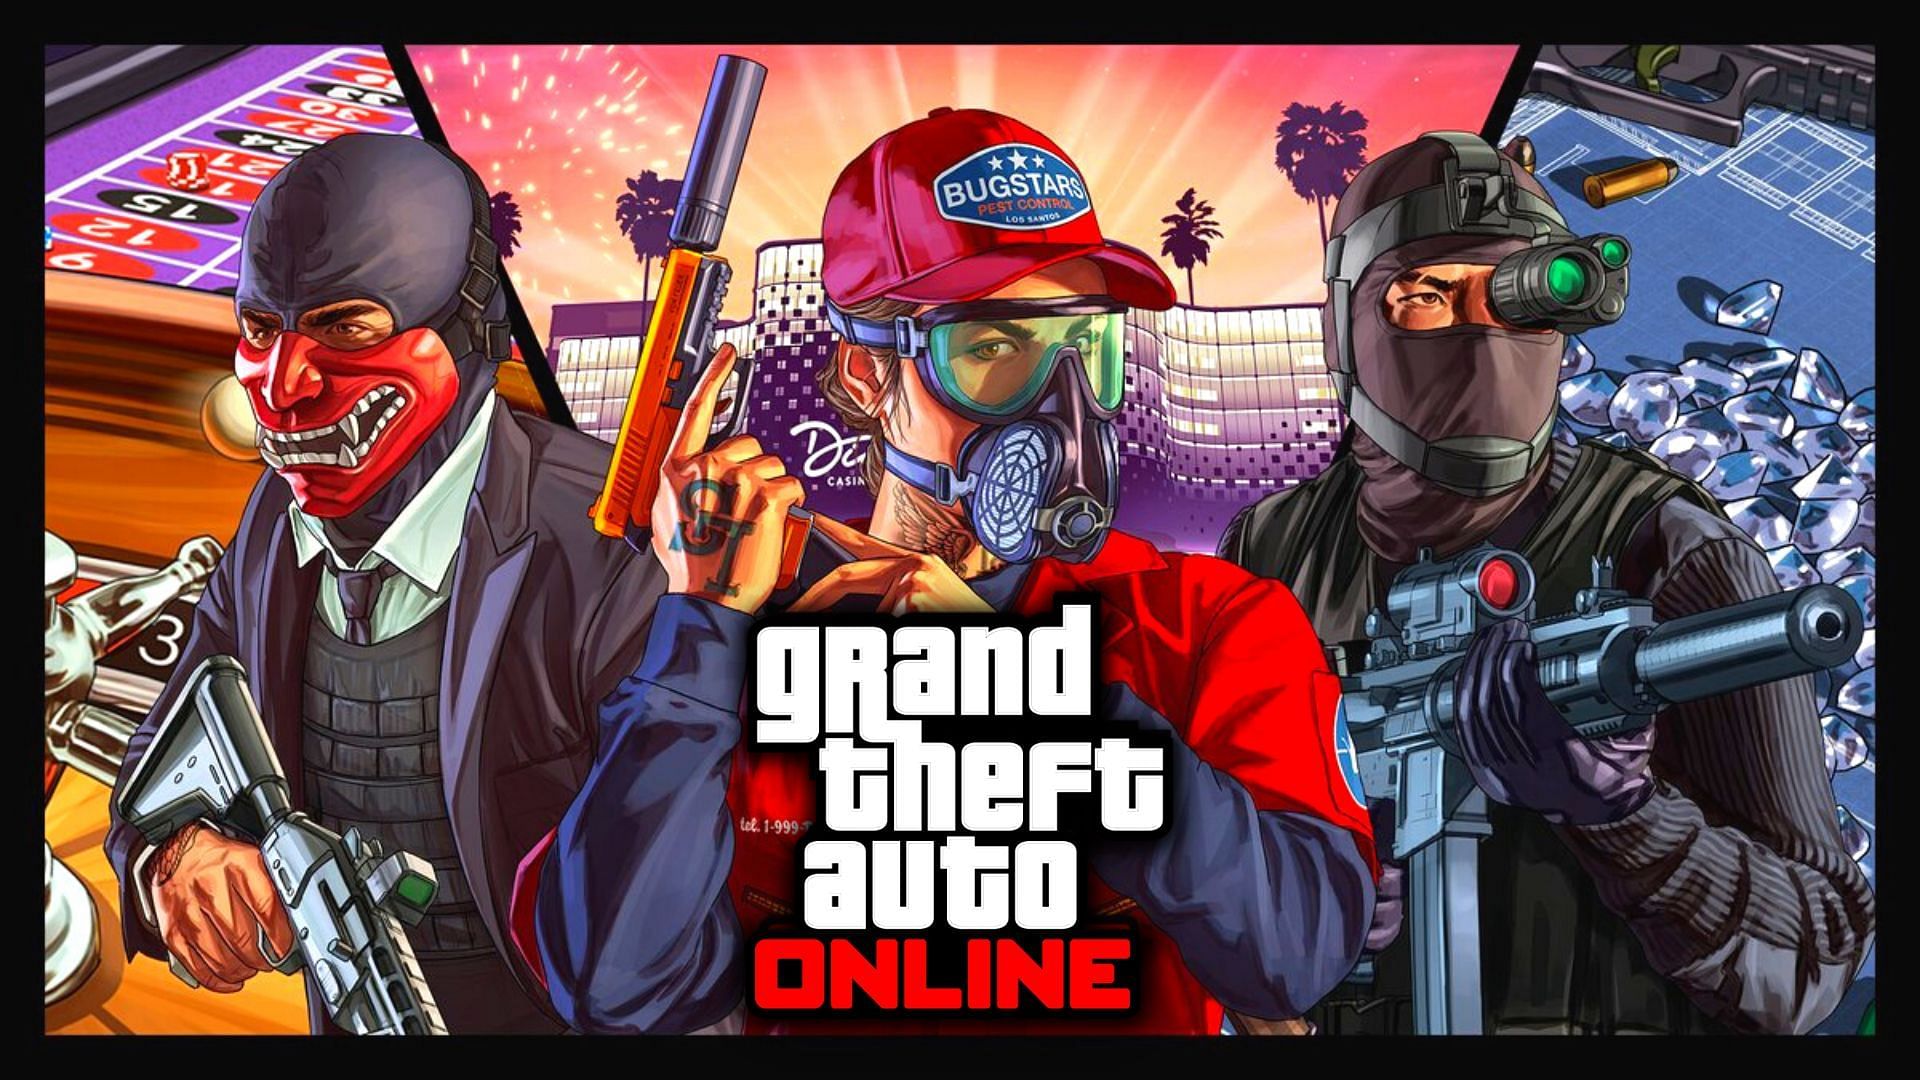 Grand Theft auto online 2021